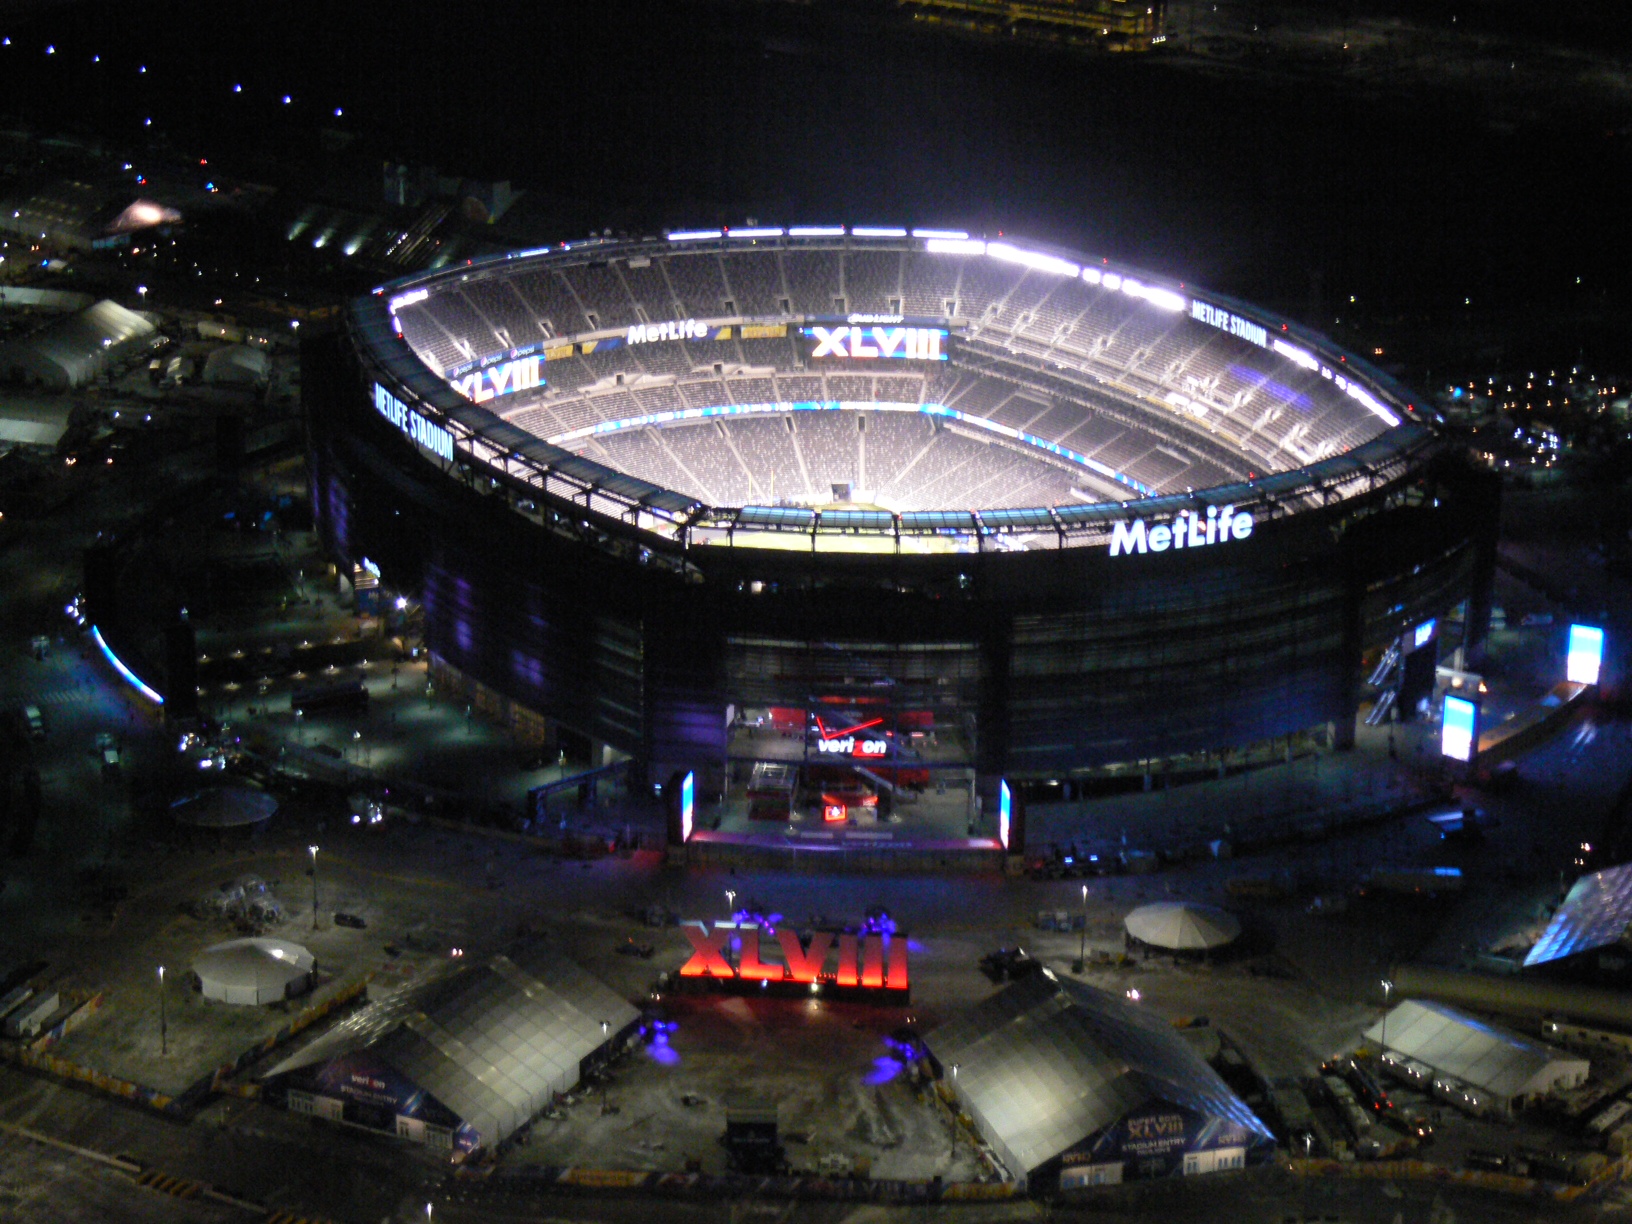 MetLife Stadium Super Bowl preps as seen from Chopper 880 on Jan. 31, 2014. (credit: Tom Kaminski/WCBS 880)